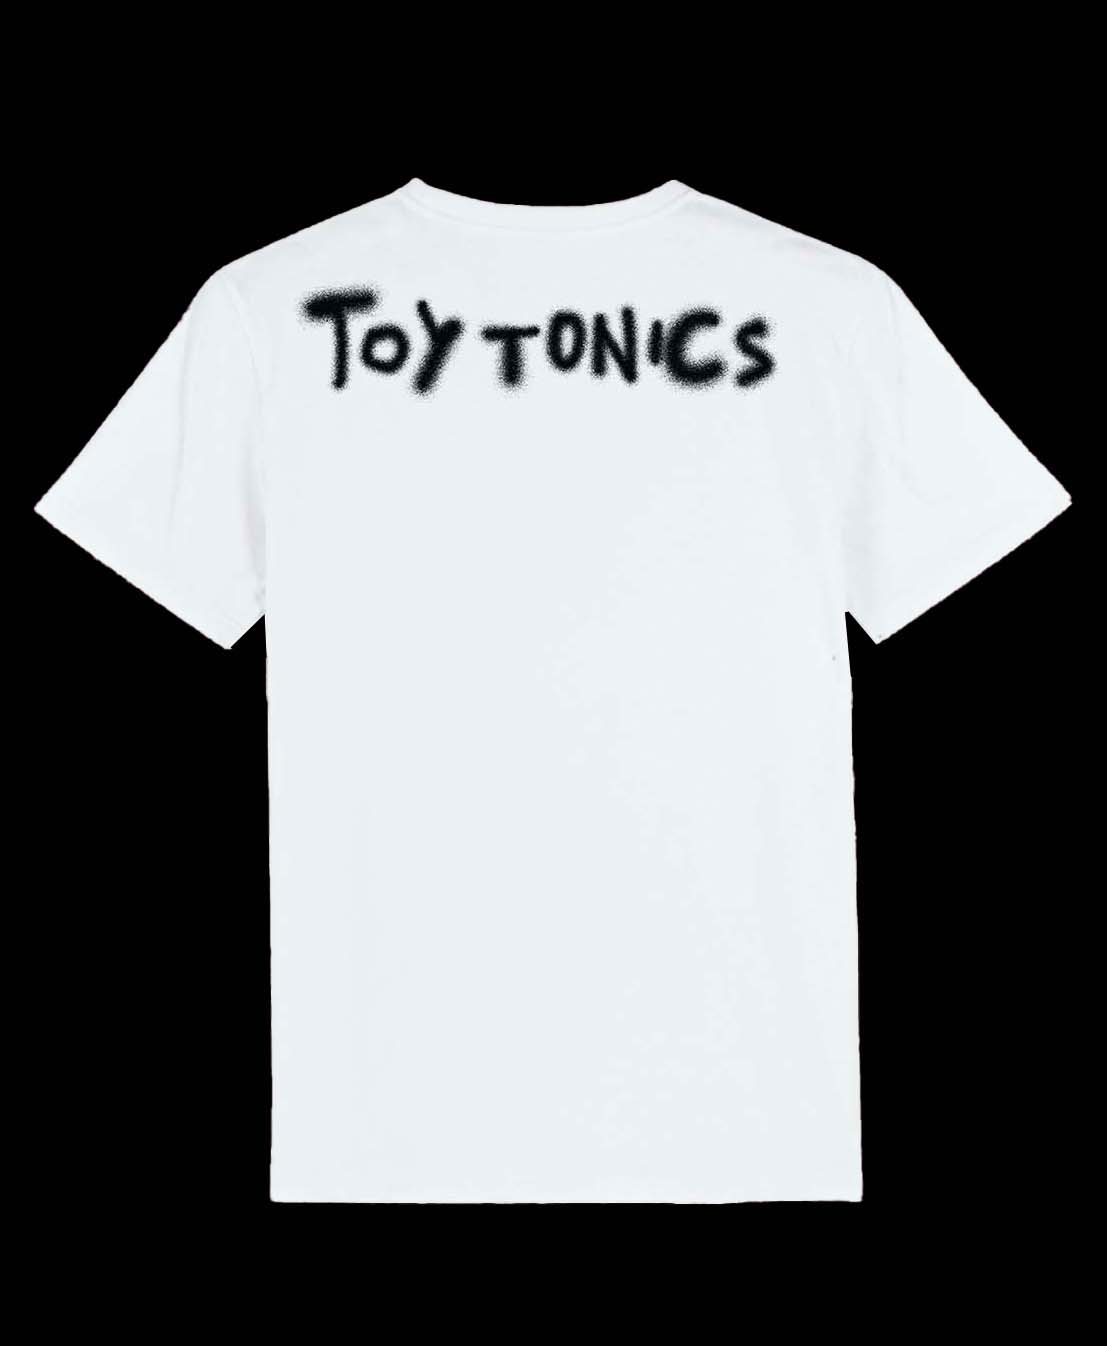 Toy Tonics Collabo Series No 5 x Kitasavi -  Limited to 150